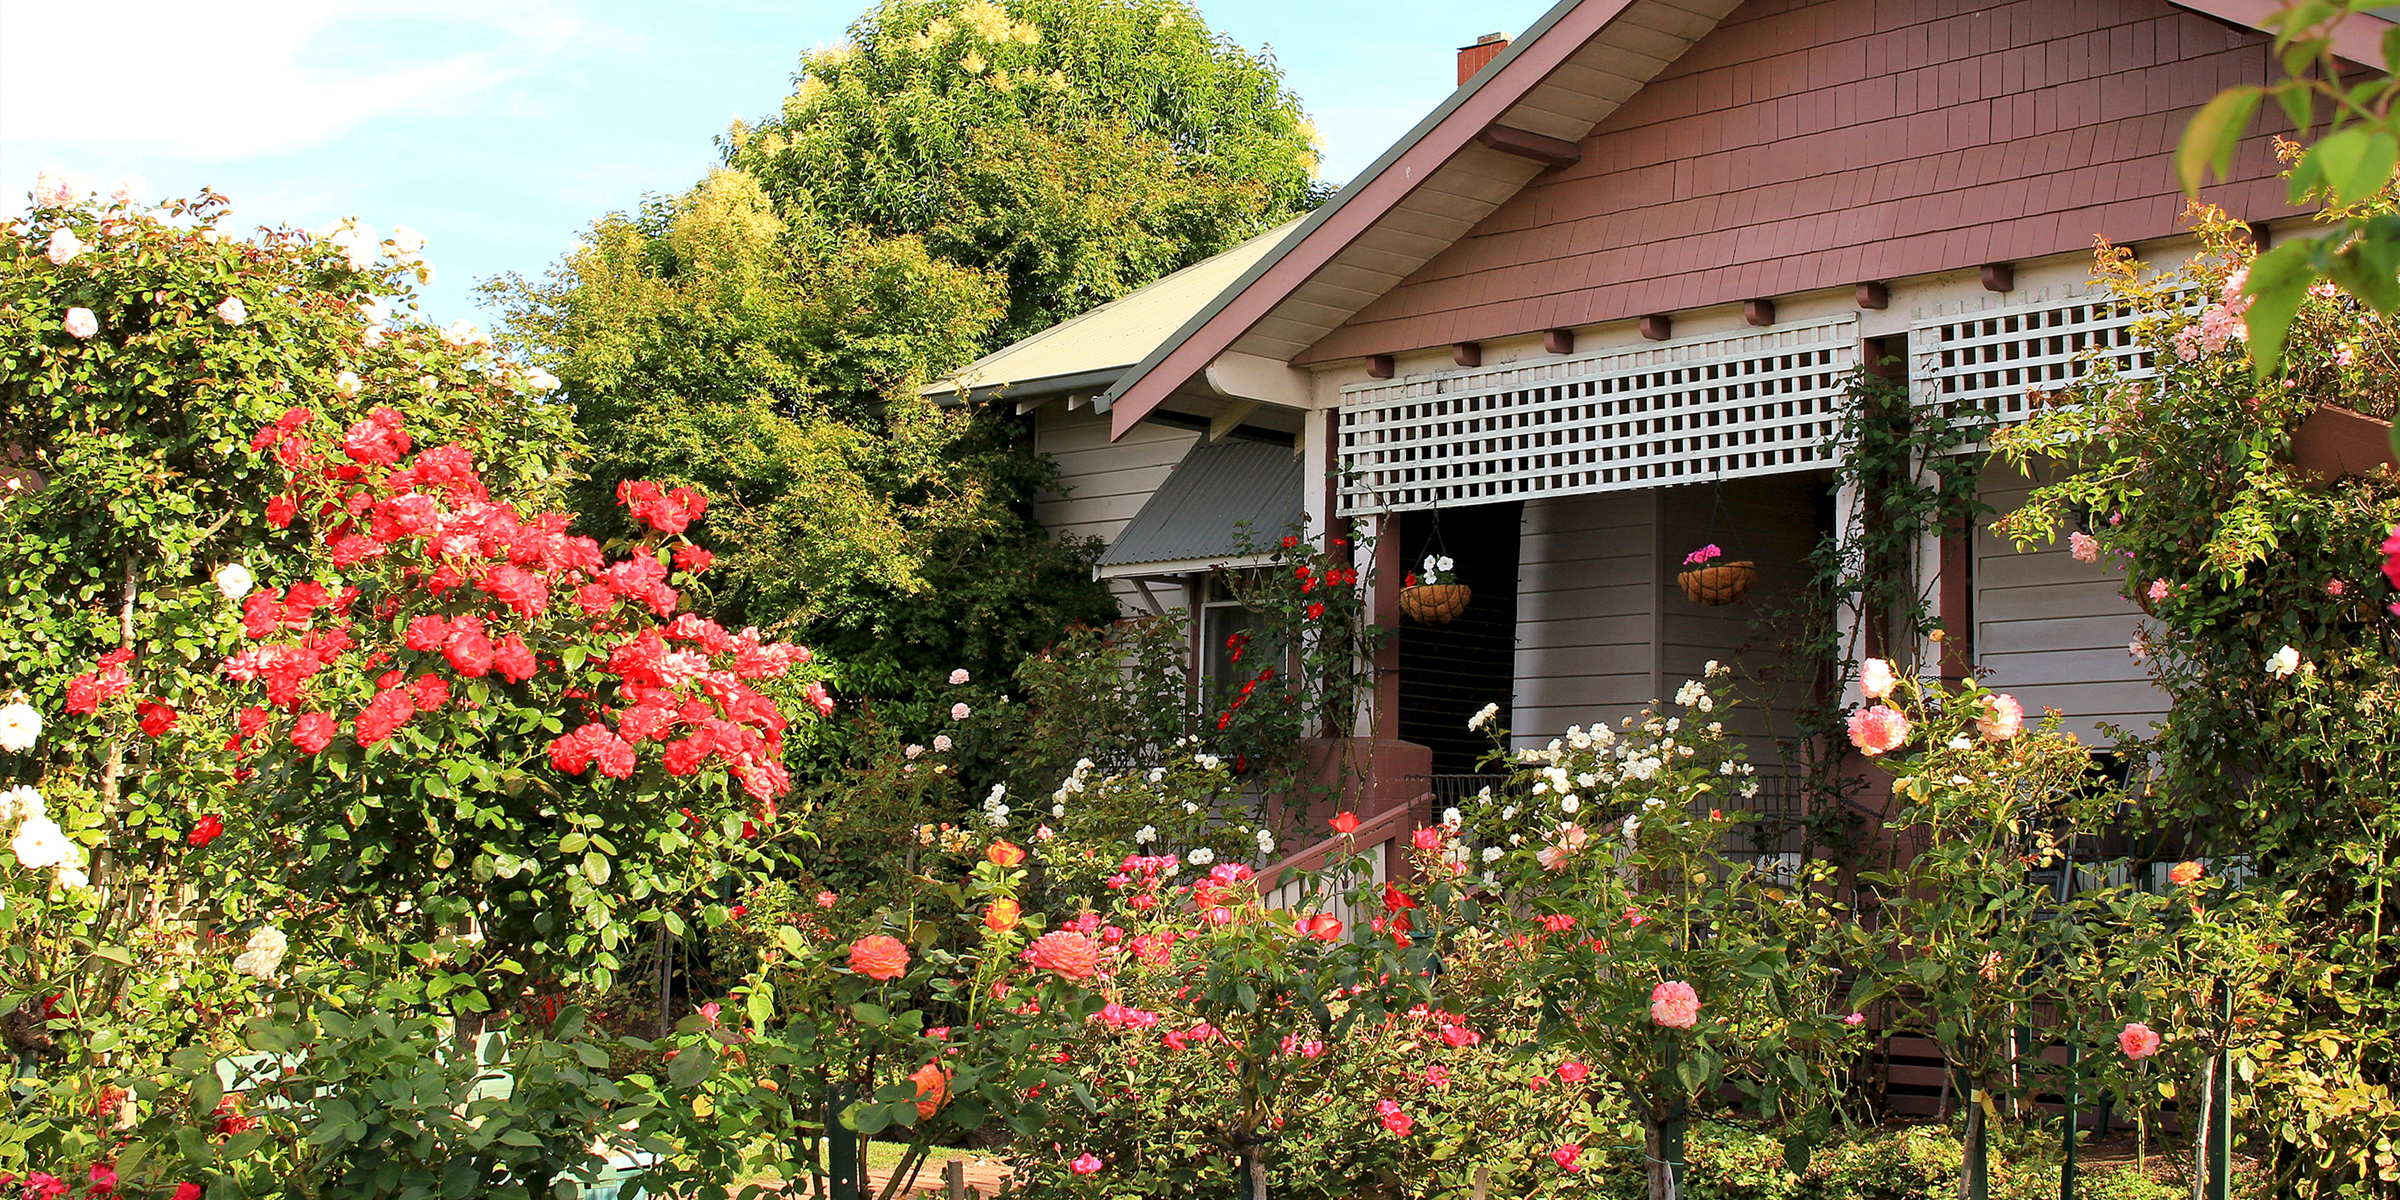 A beautiful garden outside a suburban home | Source: Shutterstock